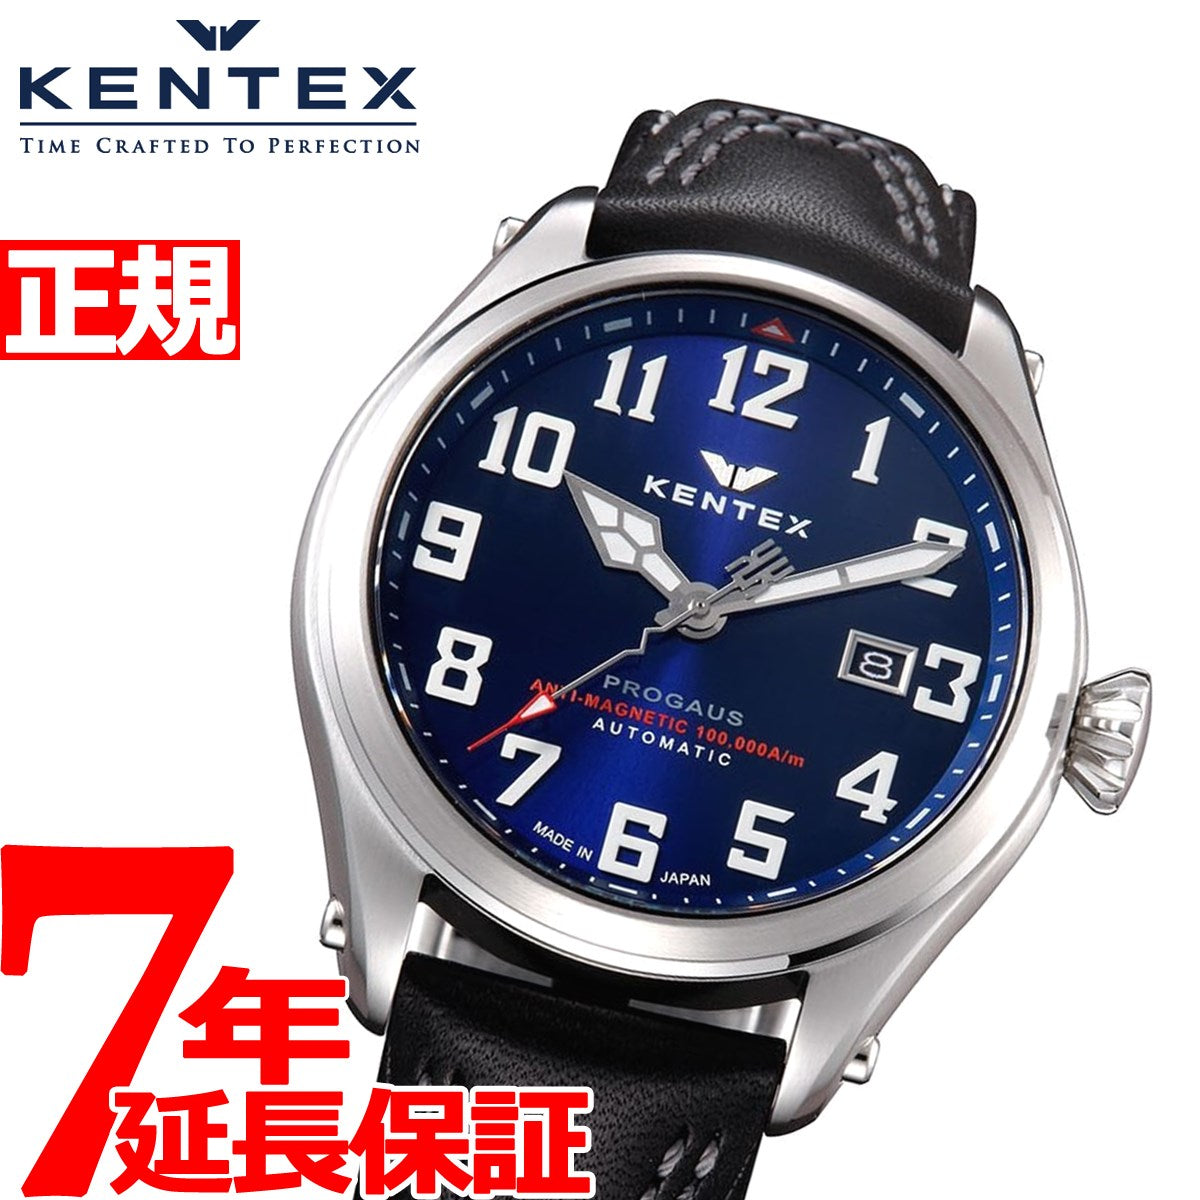 ケンテックス KENTEX メンズ 腕時計 耐磁時計 自動巻き プロガウス S769X-01